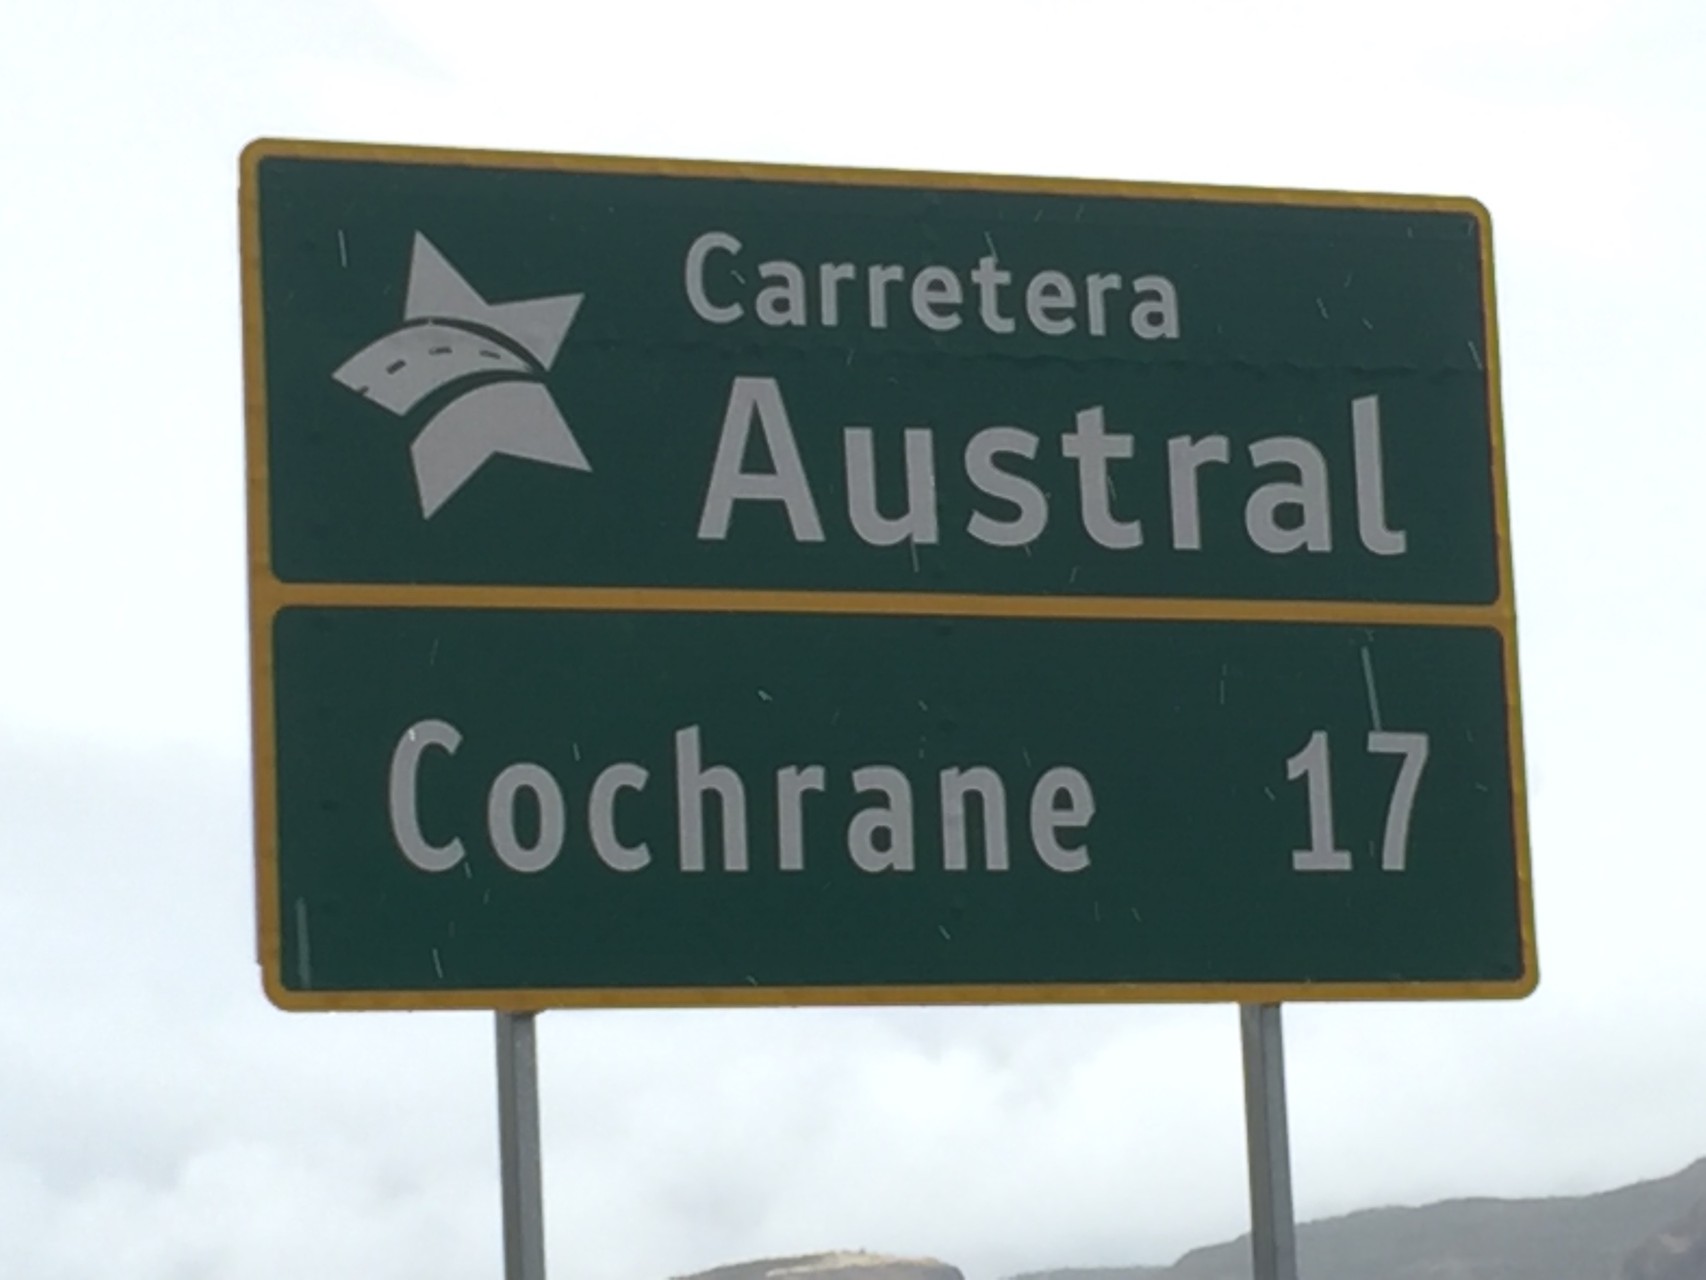 Endlich, wir sind auf der Carretera Austral!